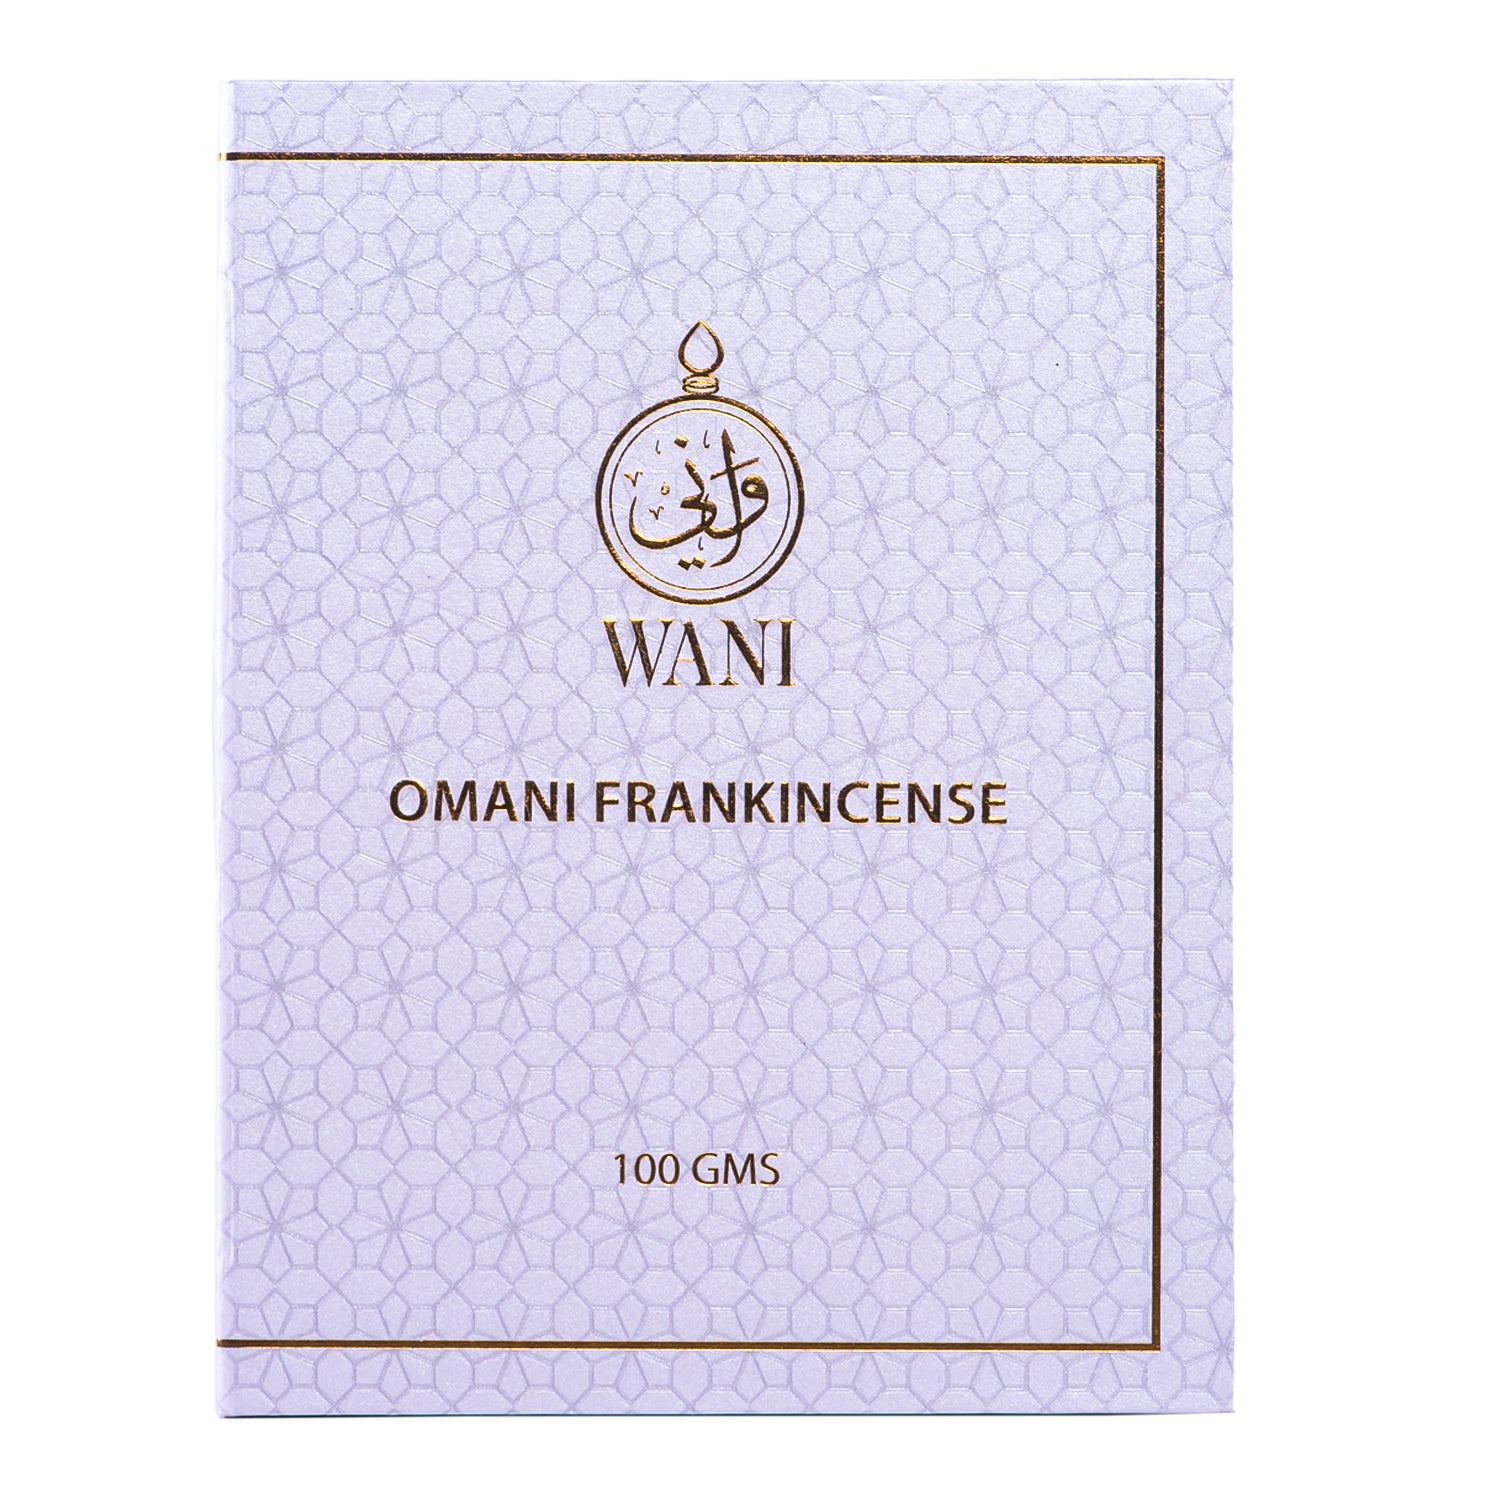 White Omani Frankincense